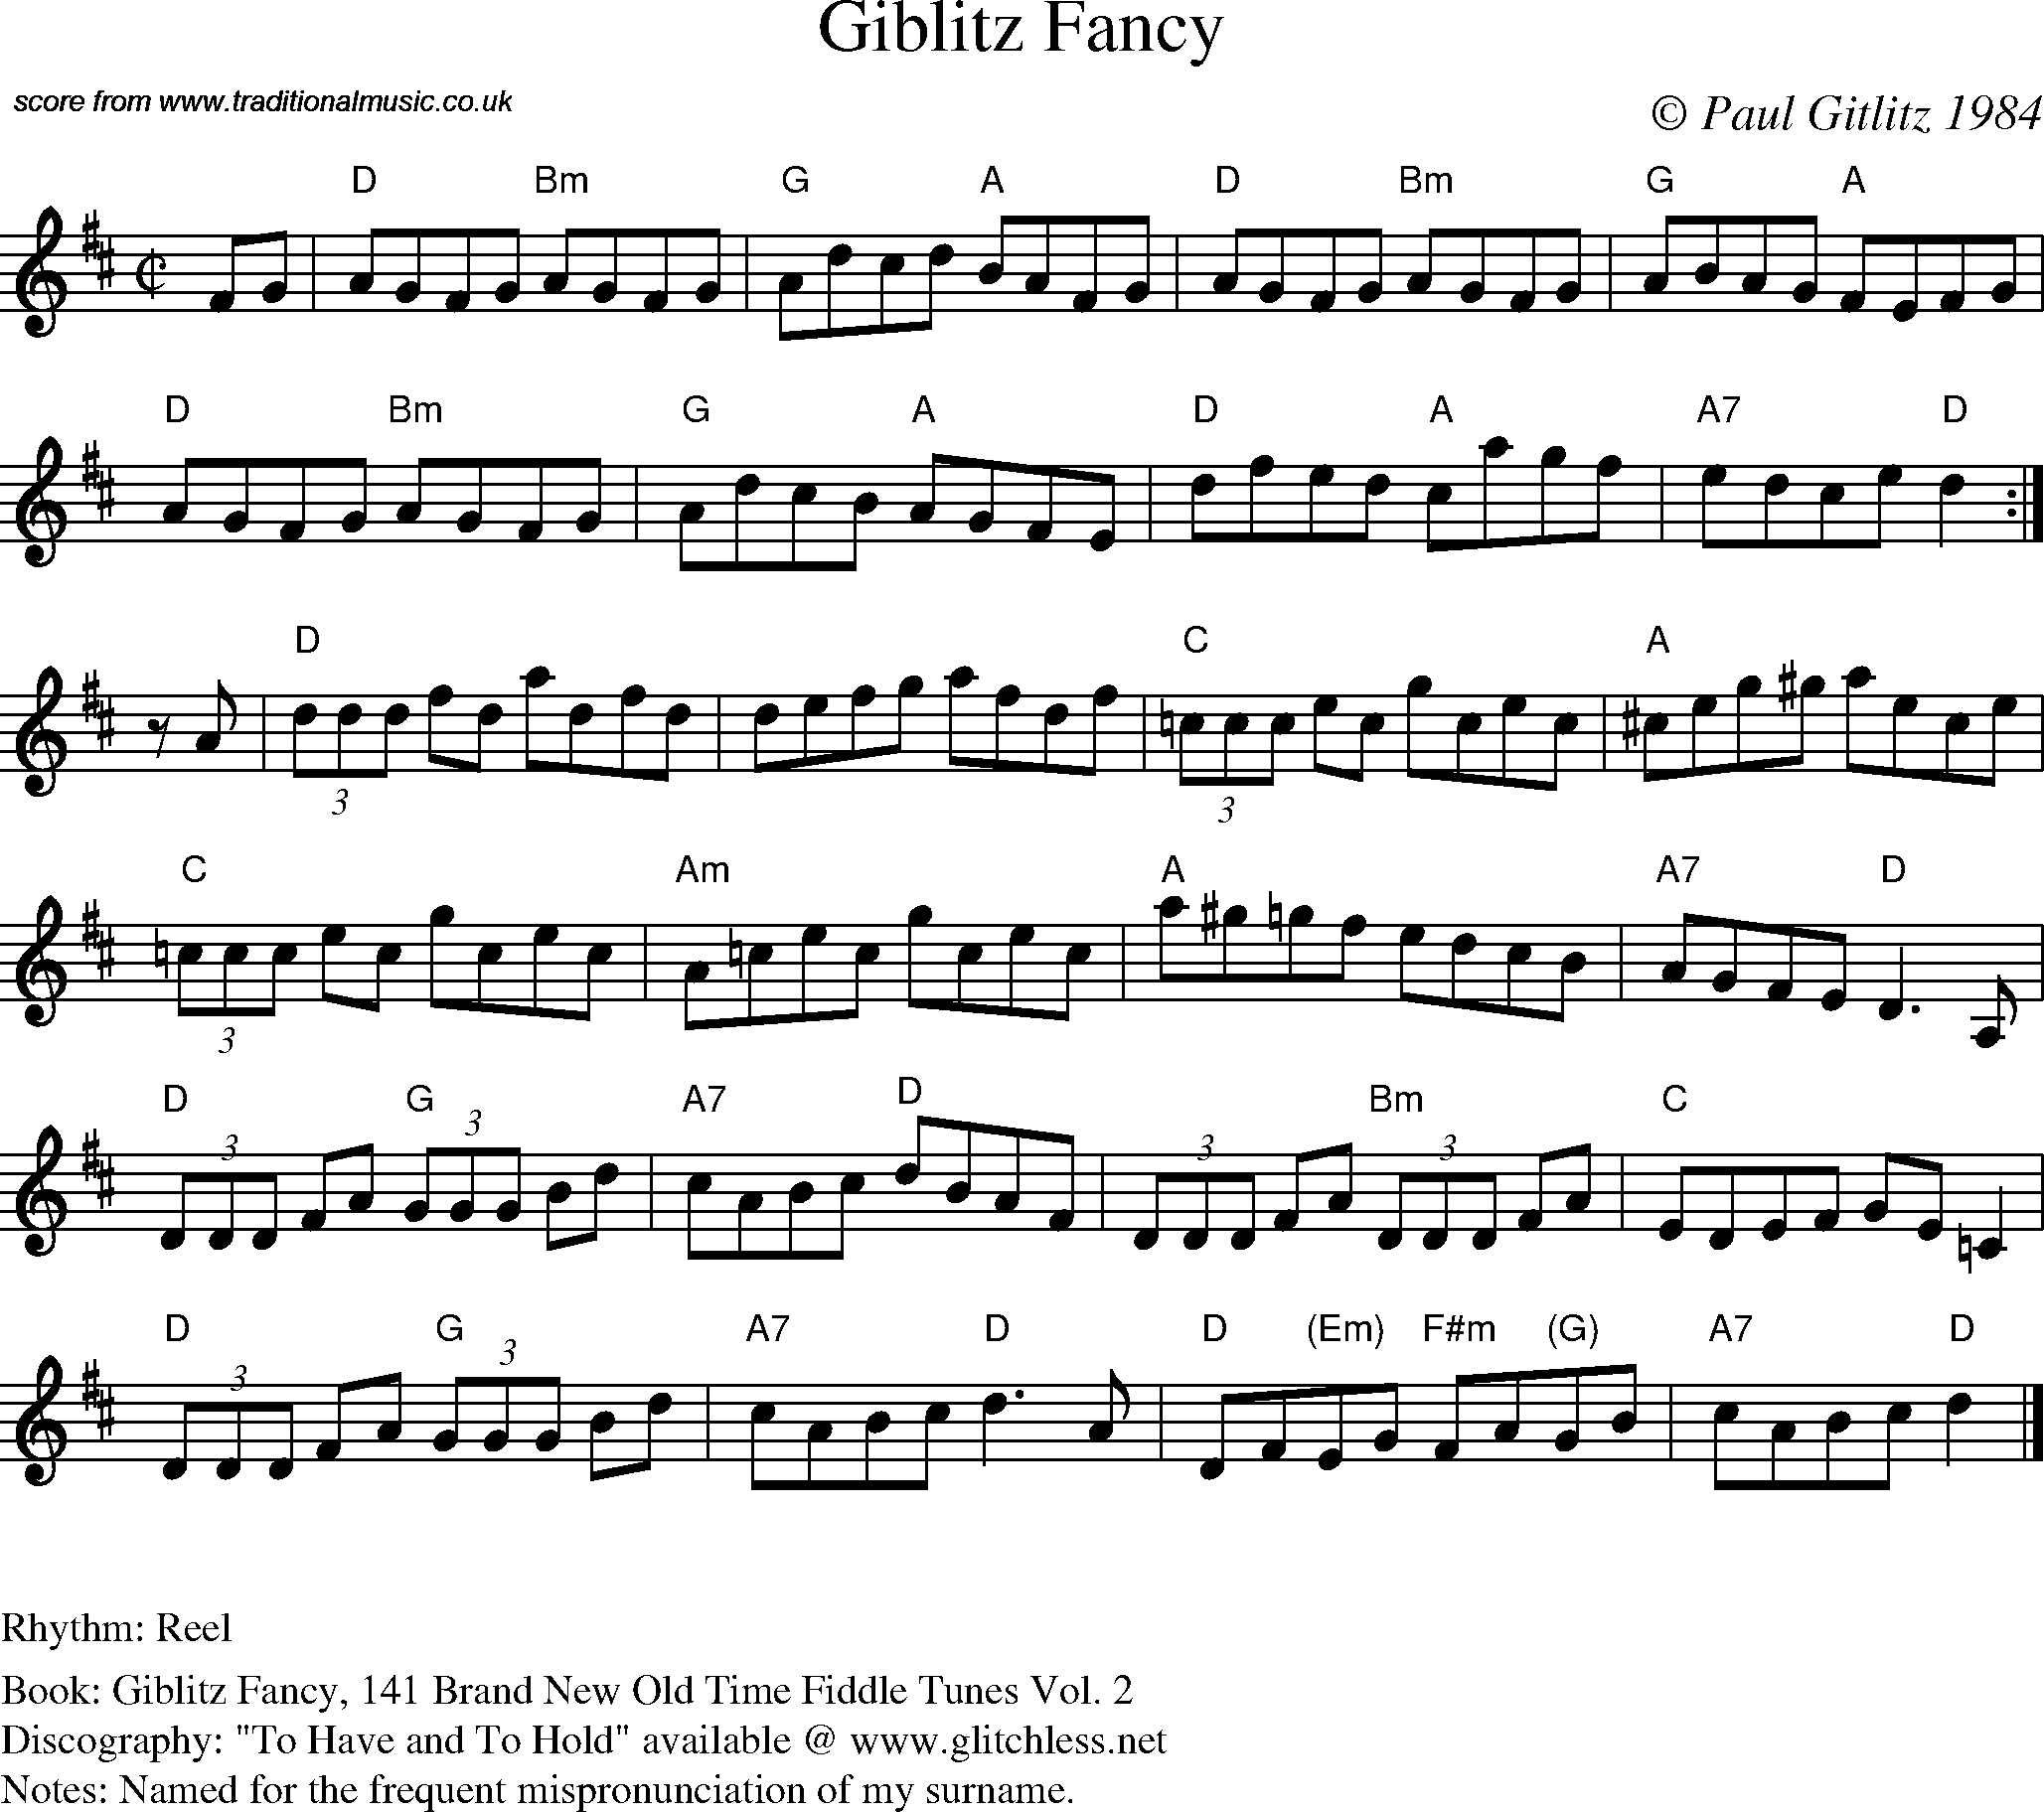 Sheet Music Score for Reel - Giblitz Fancy